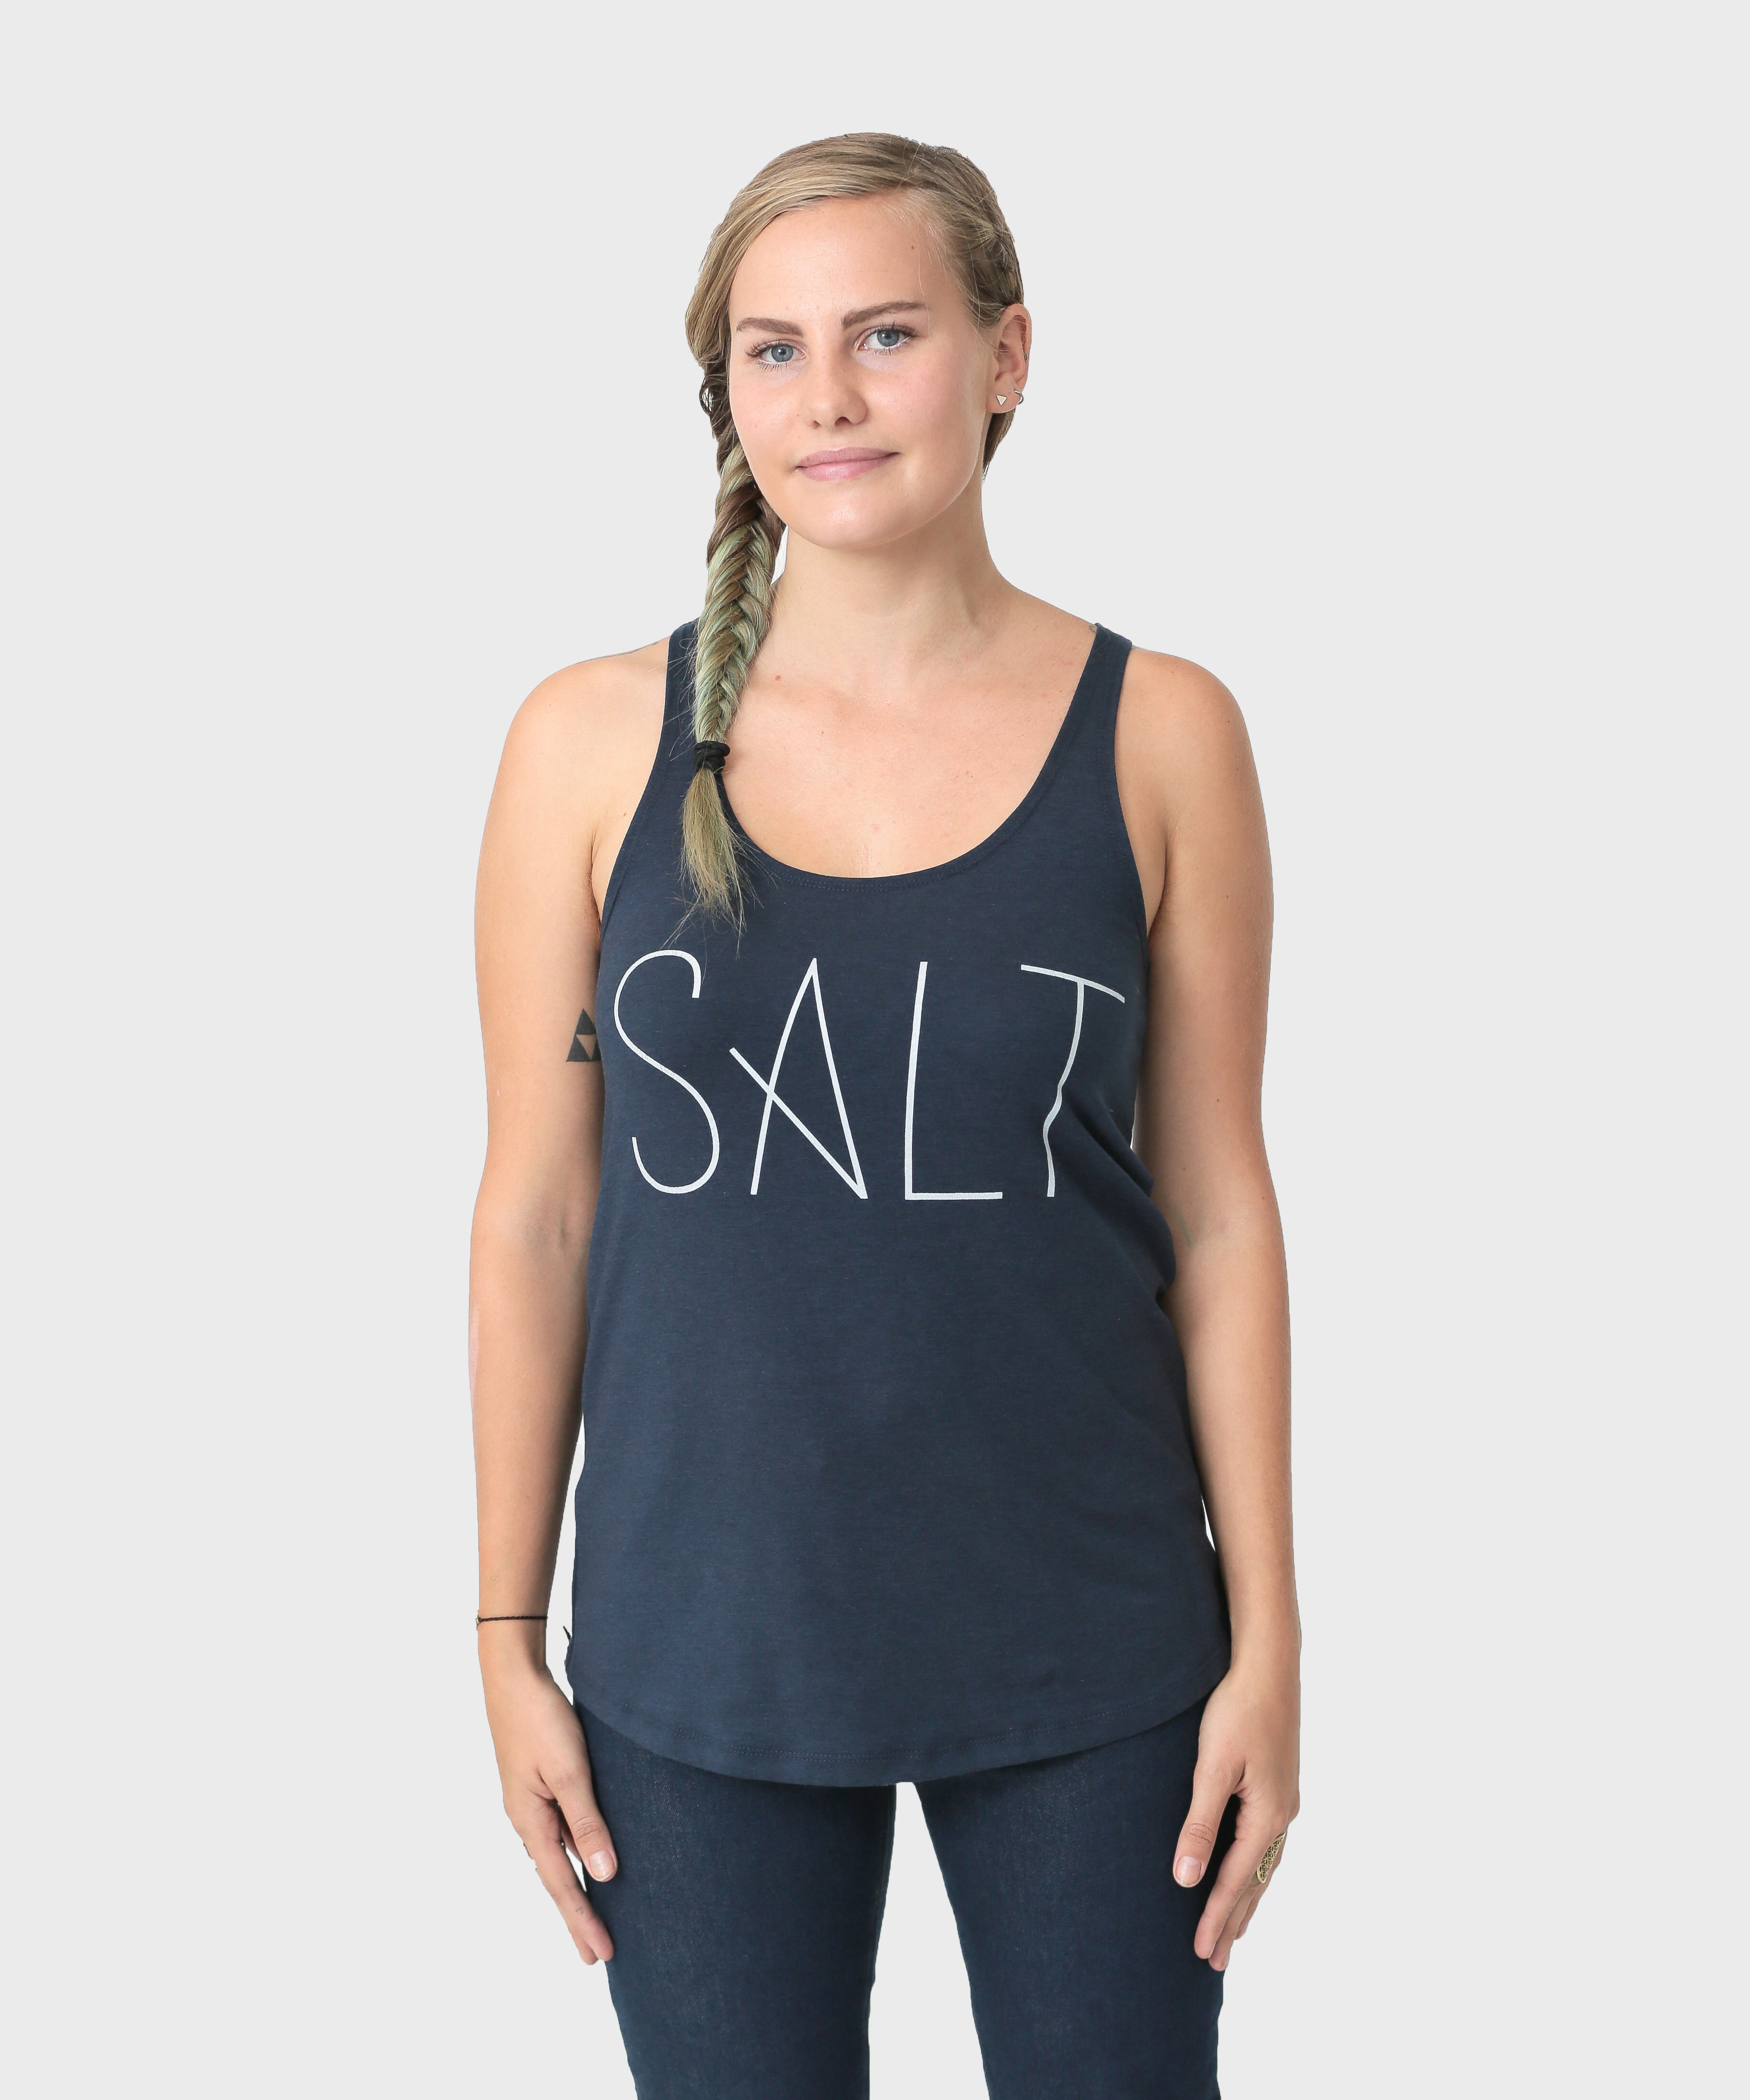 Lana Tank  |  SALT - SALT Shop